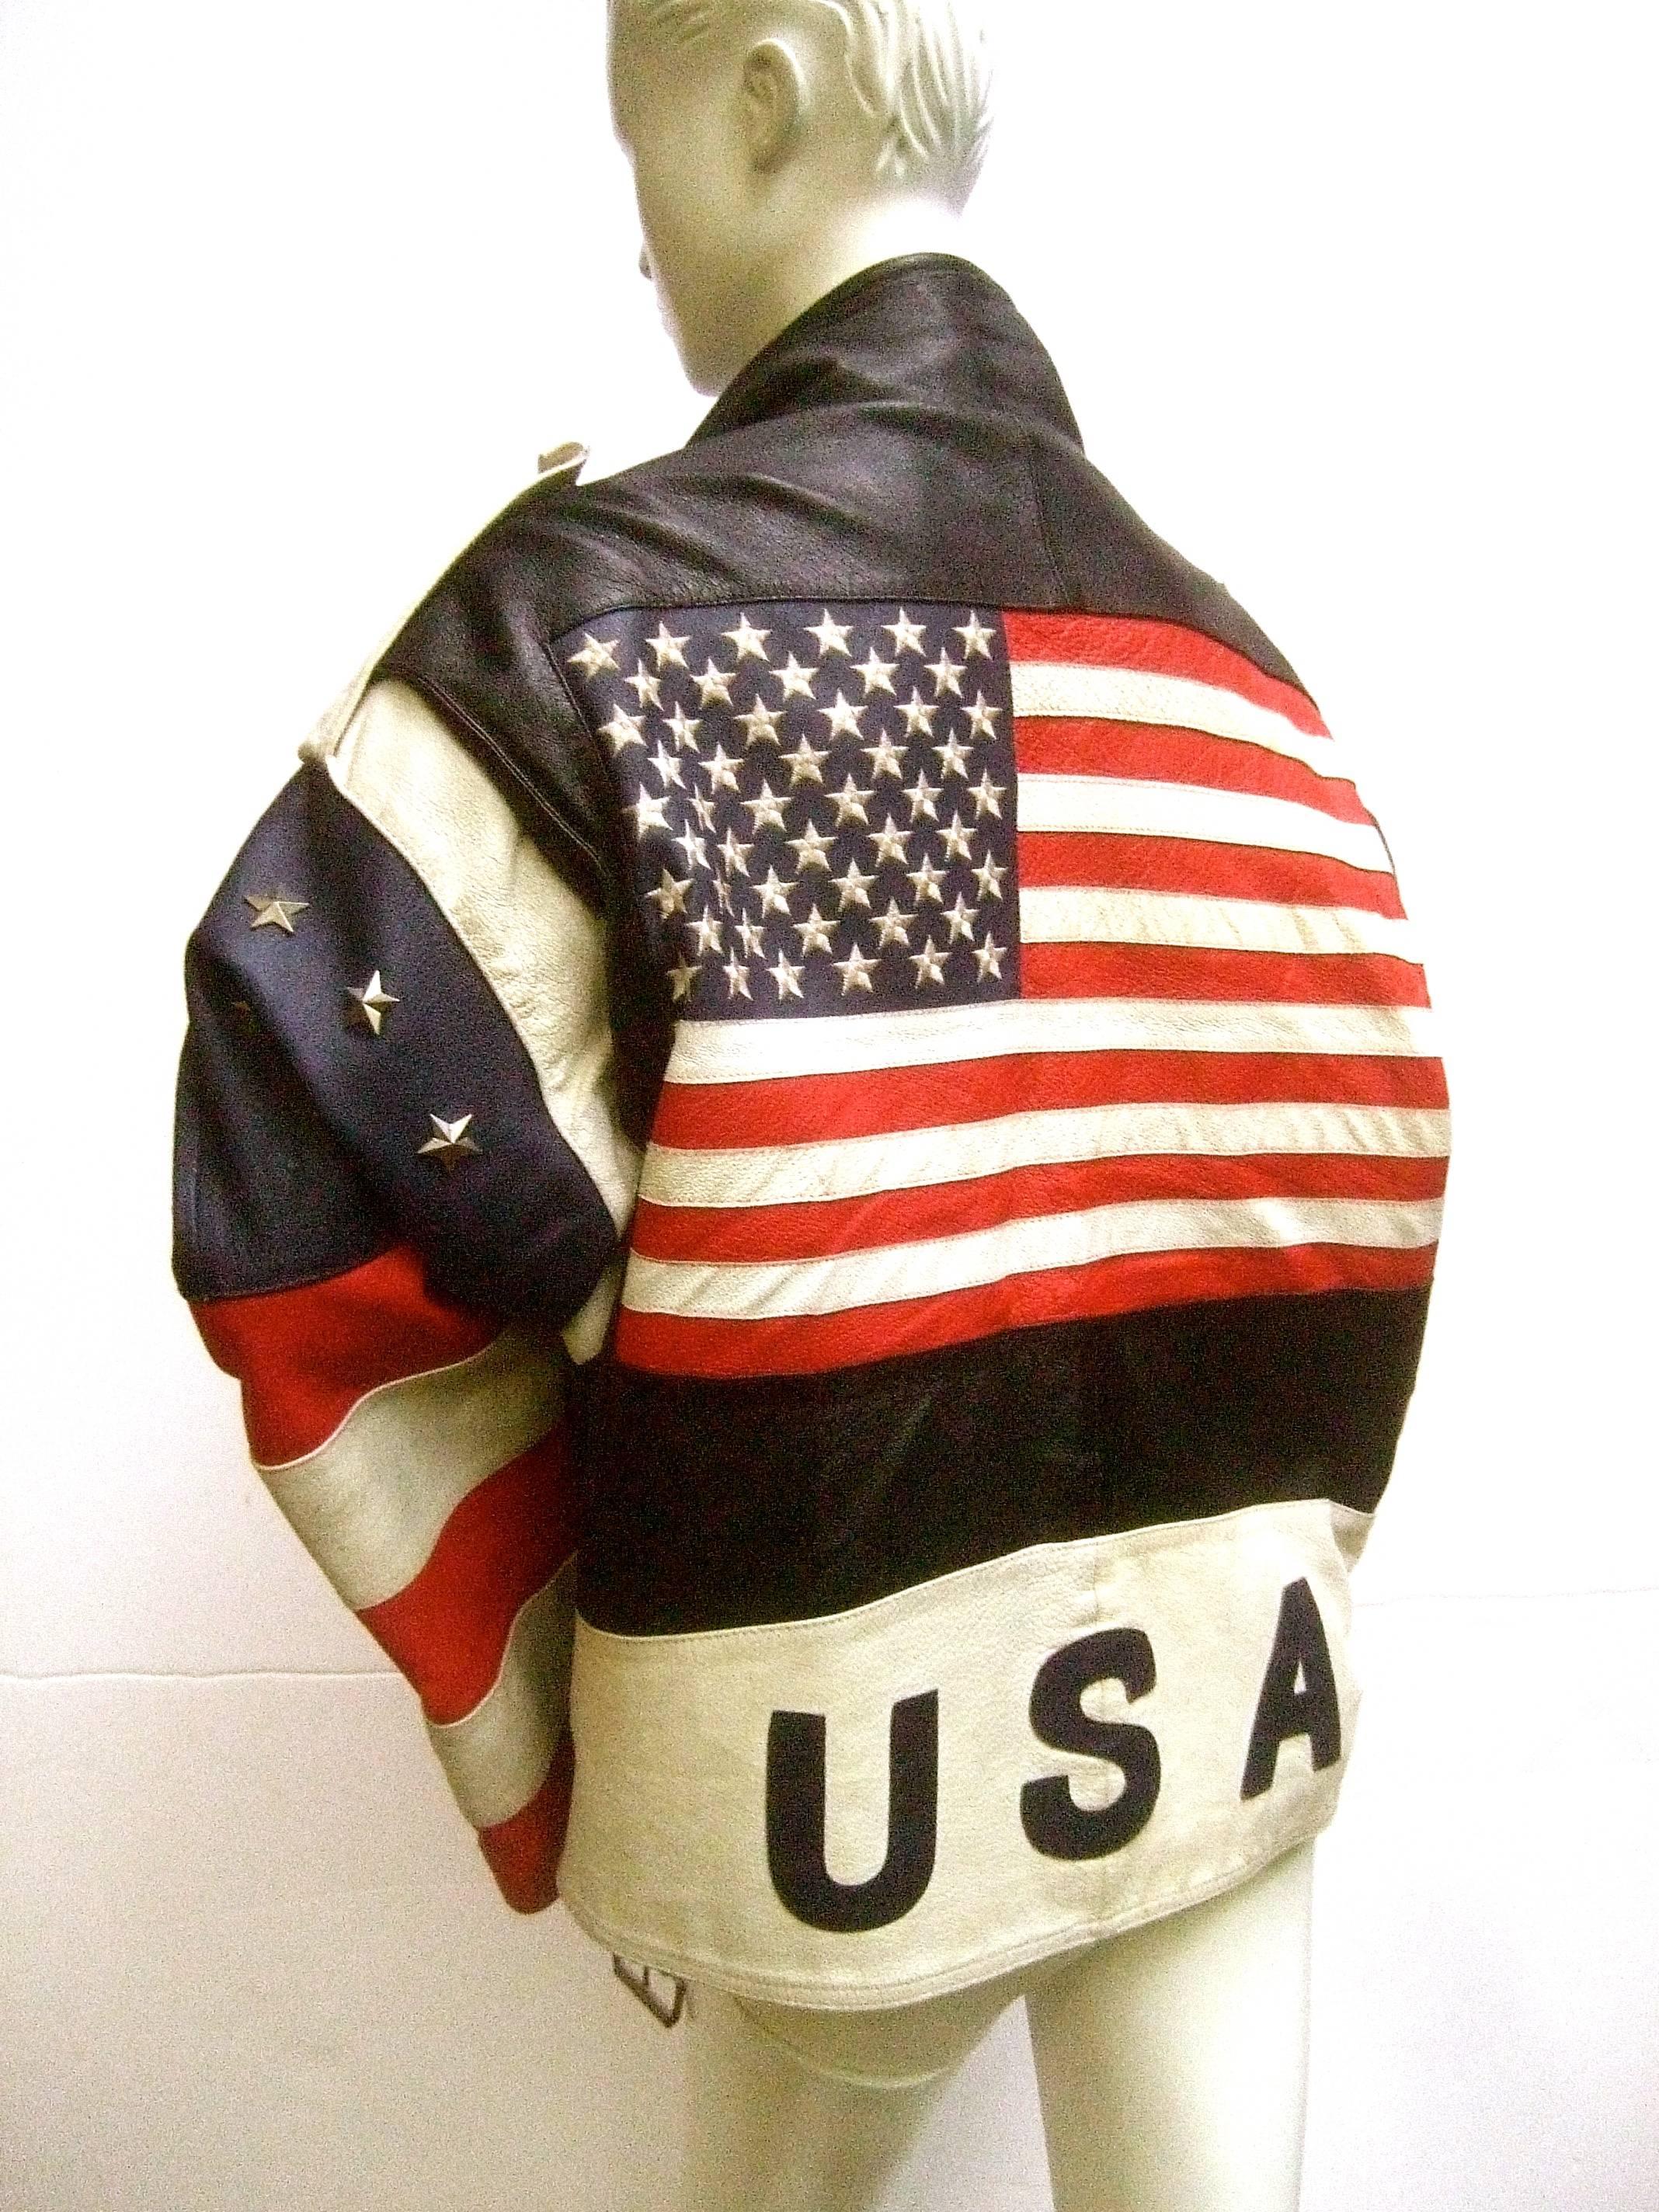 Beige Men's Leather Patriotic American Flag Motorcycle Jacket ca 1980s